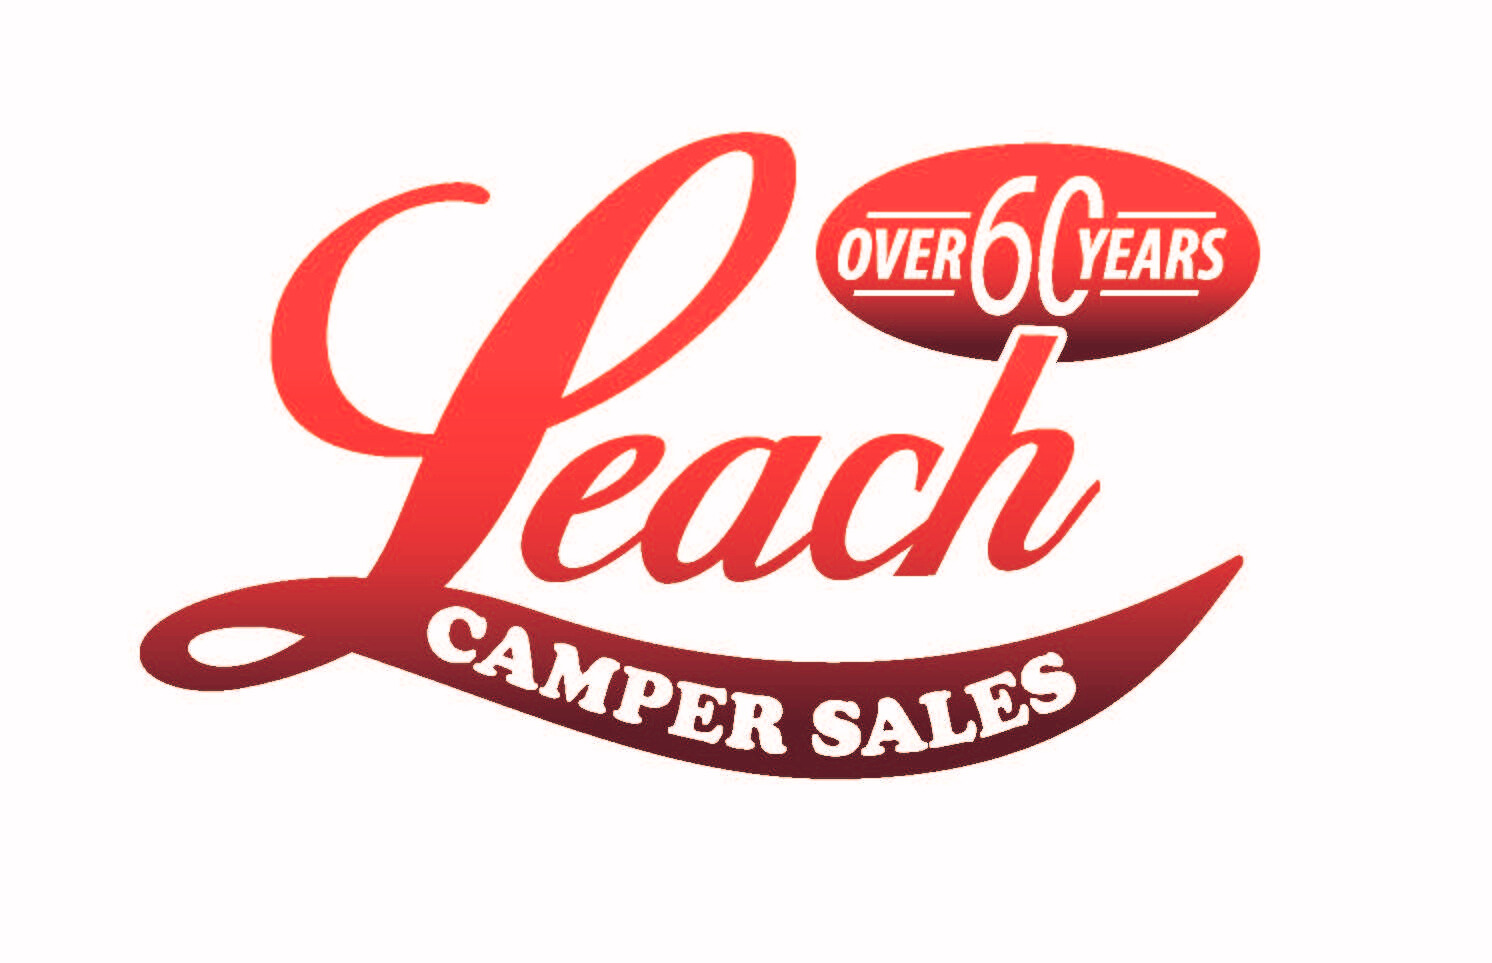 Leach Camper Sales White Background